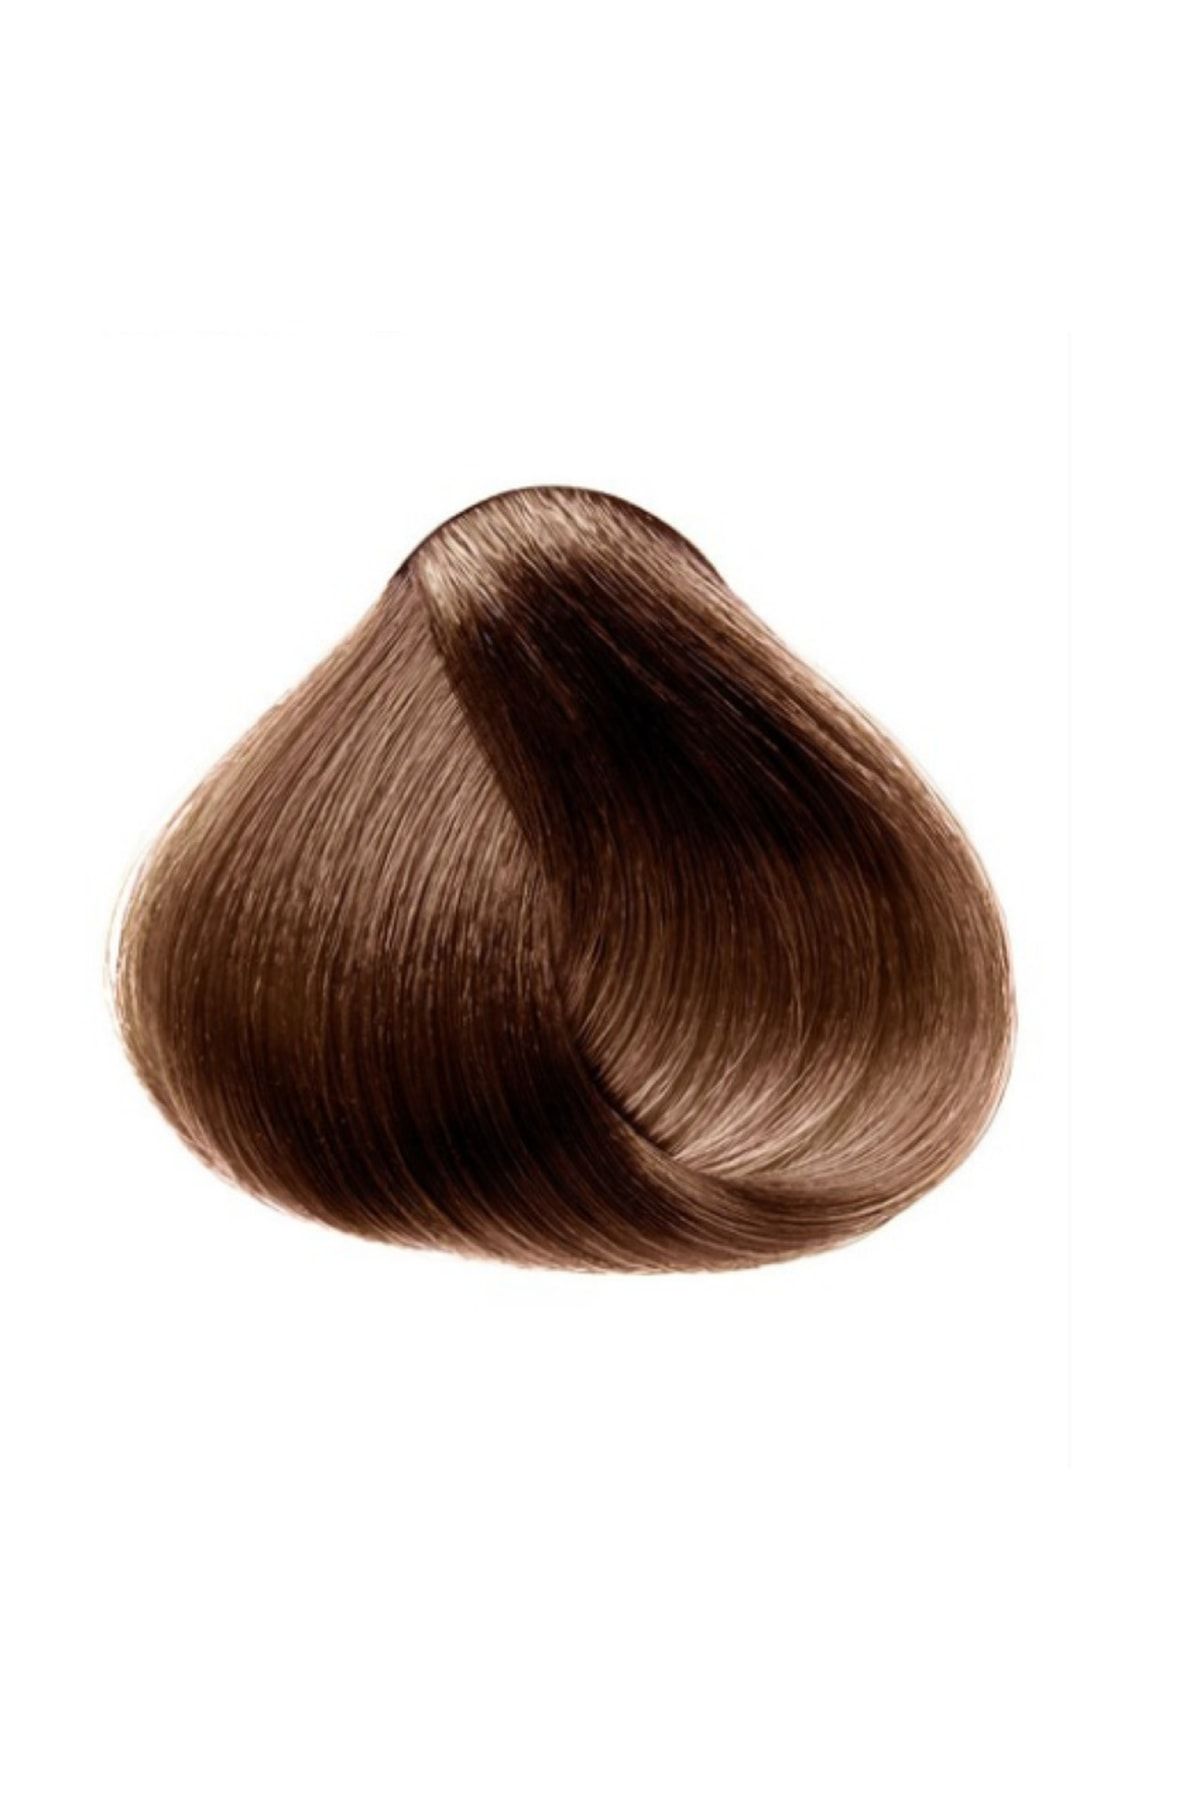 Faberlic Salon Care Kalıcı Krem Saç Boyası 6,54 Açık Kestane *8279